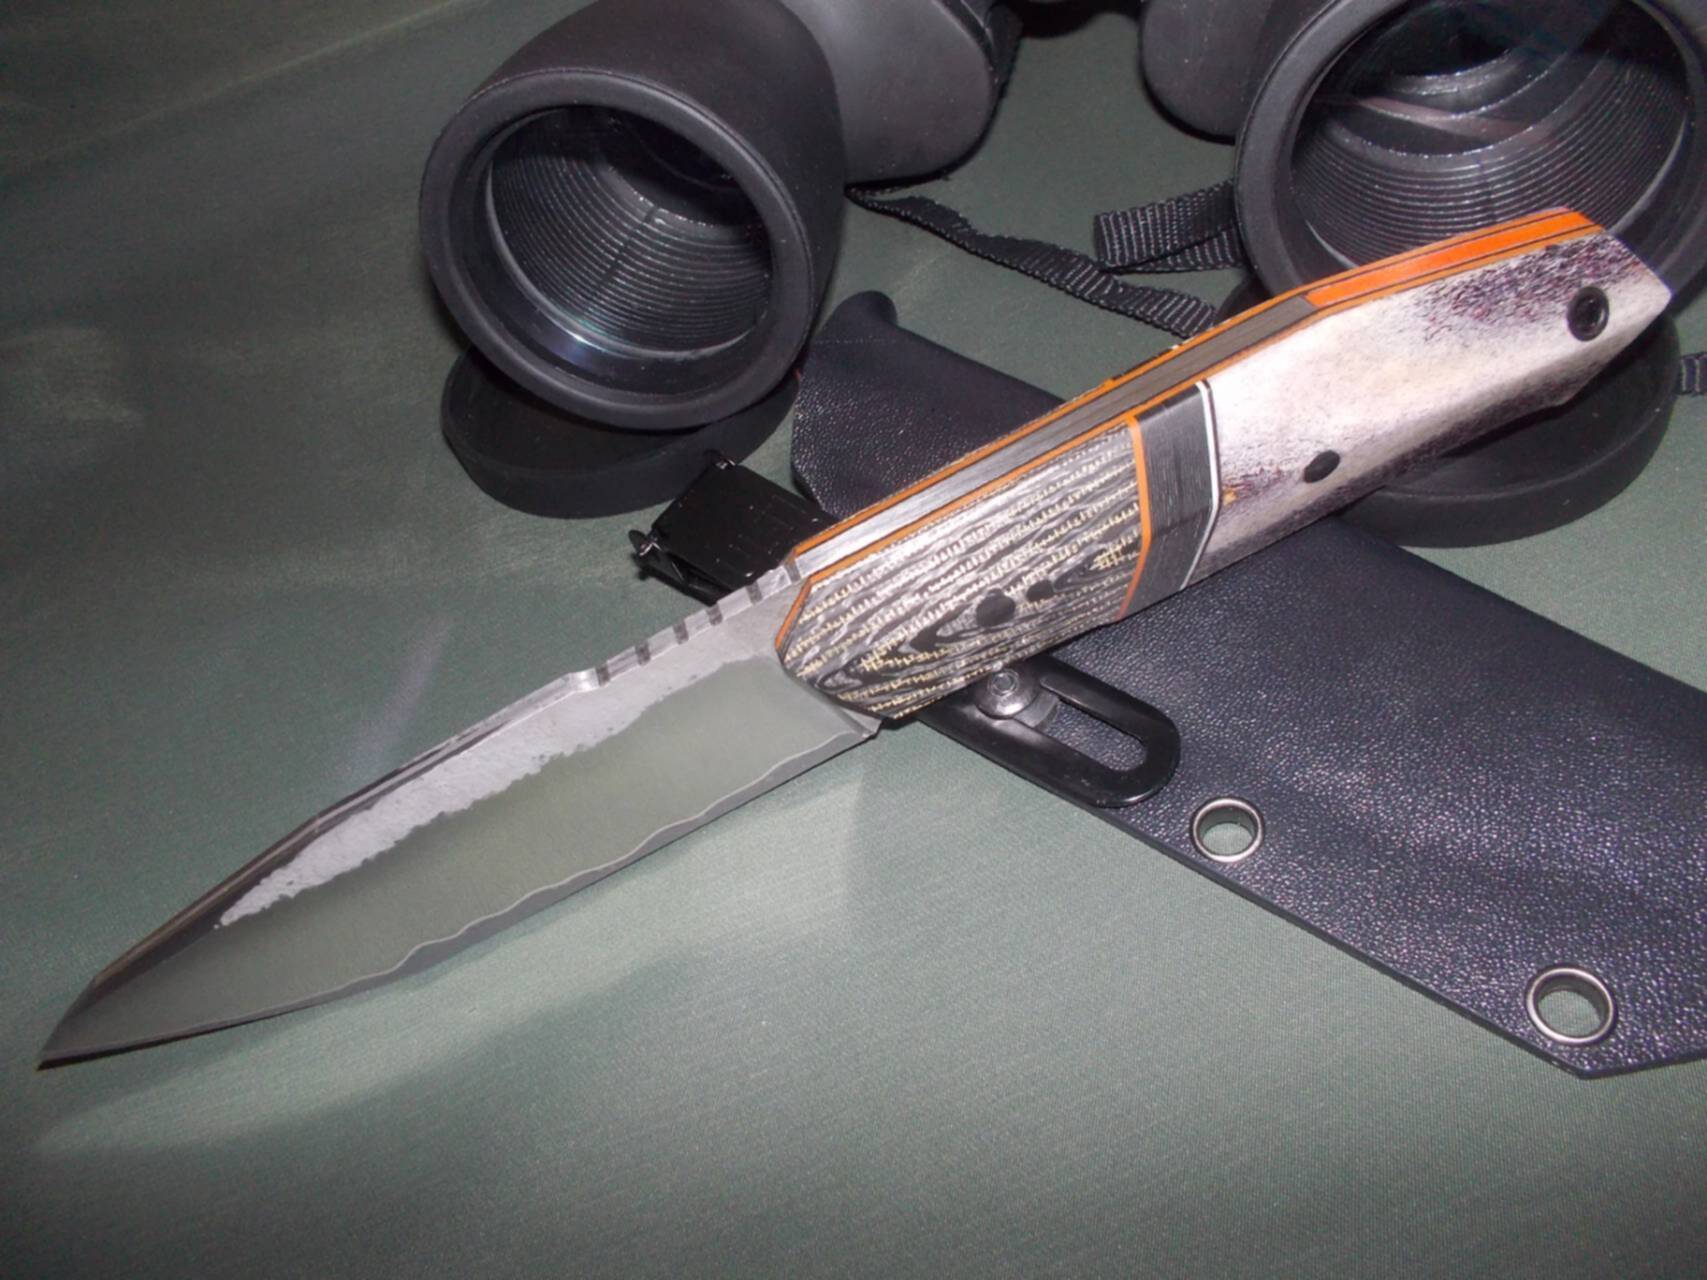 Ножевая барахолка без. Нож фултанг из PGK. WORKINGKNIFE, фултанг, 115х22.5х3.8. Нож с ламинатом и карбоном. Большой харизматичный нож.